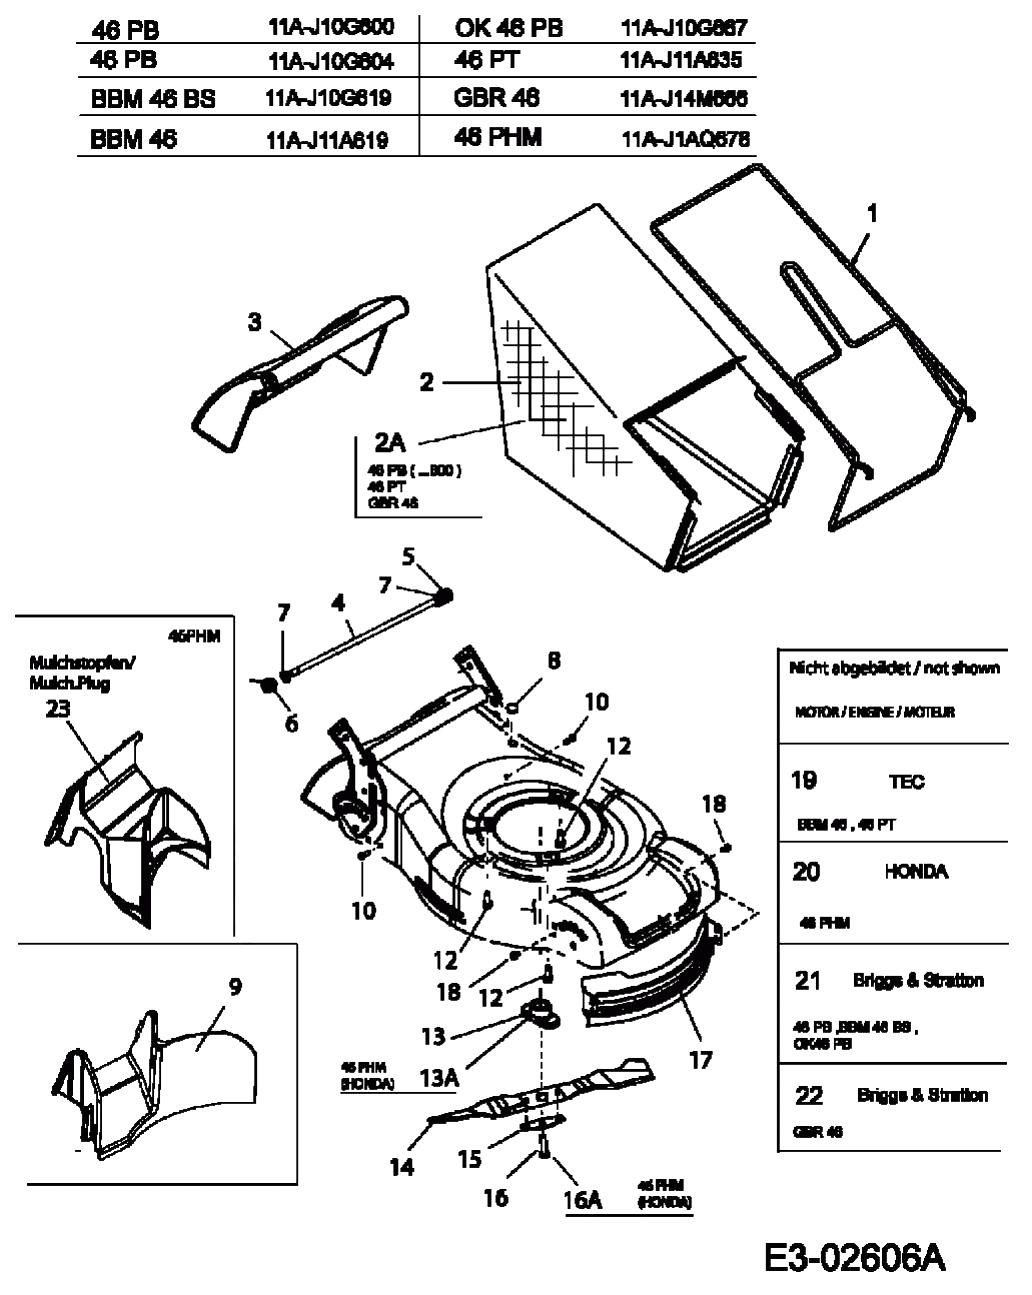 MTD Артикул 11A-J1AQ678 (год выпуска 2006). Травосборник, нож, двигатель, мульчирование